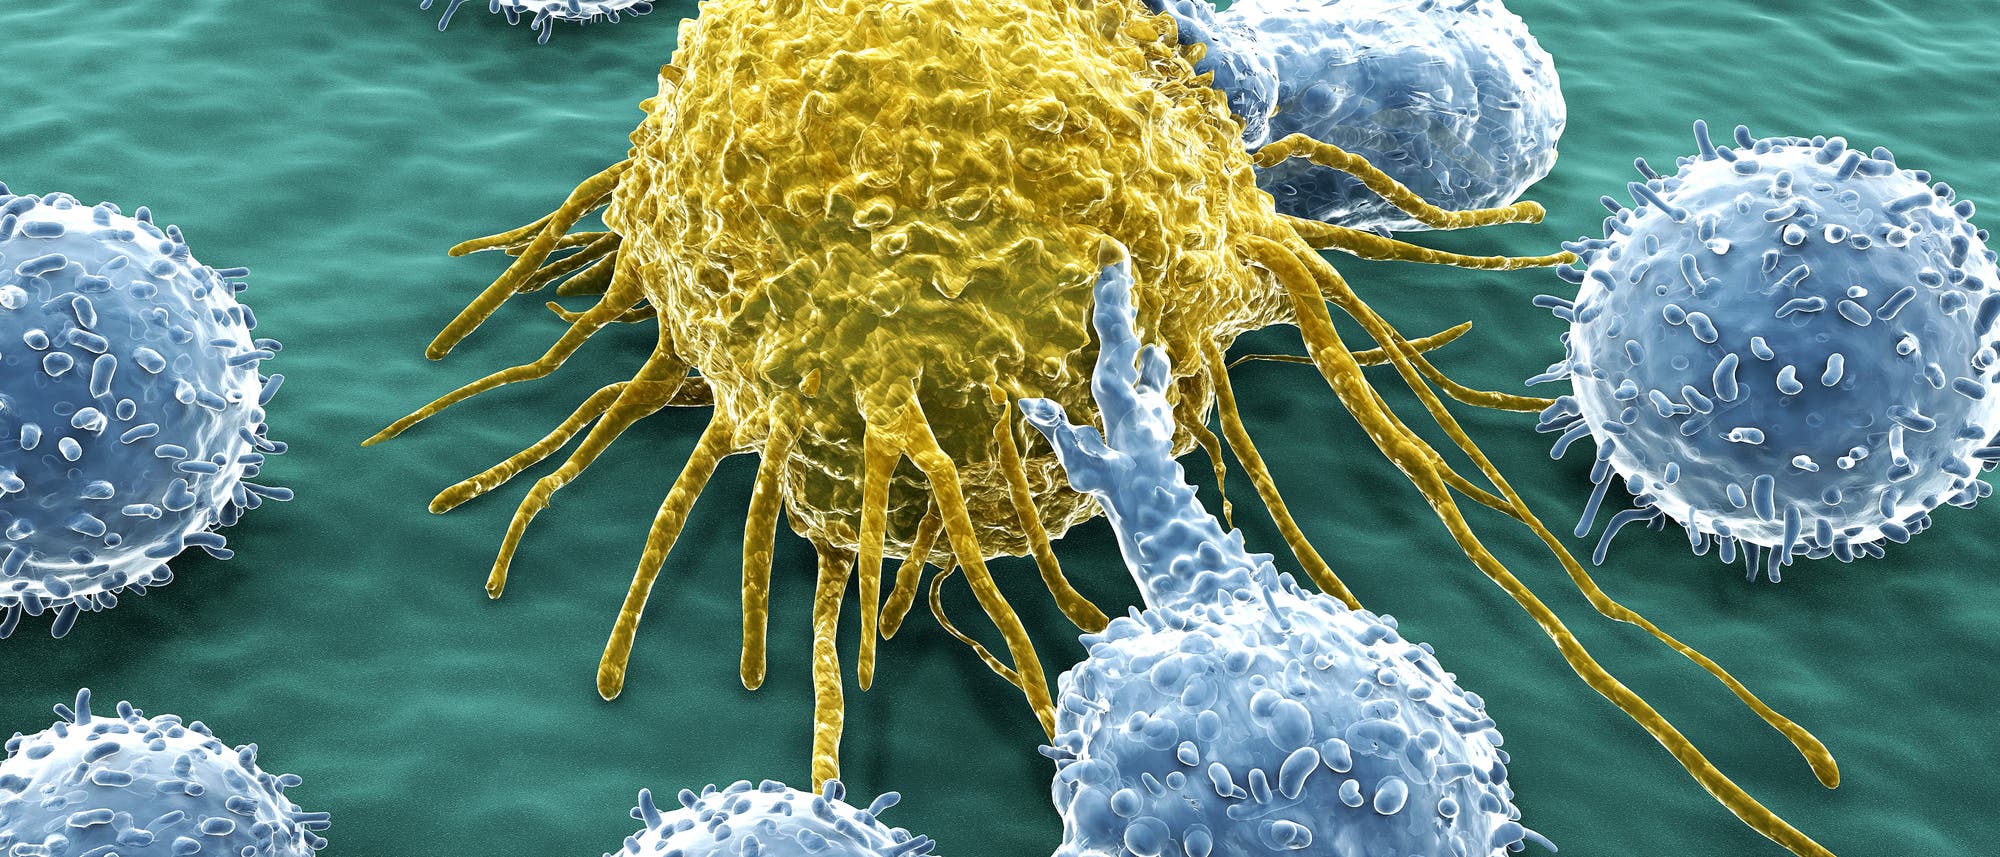 Menschliche T-Lymphozyten (blau) attackieren eine Krebszelle (gelb). Kolorierte Raster-Elektronen-Mikroskopische Aufnahme.